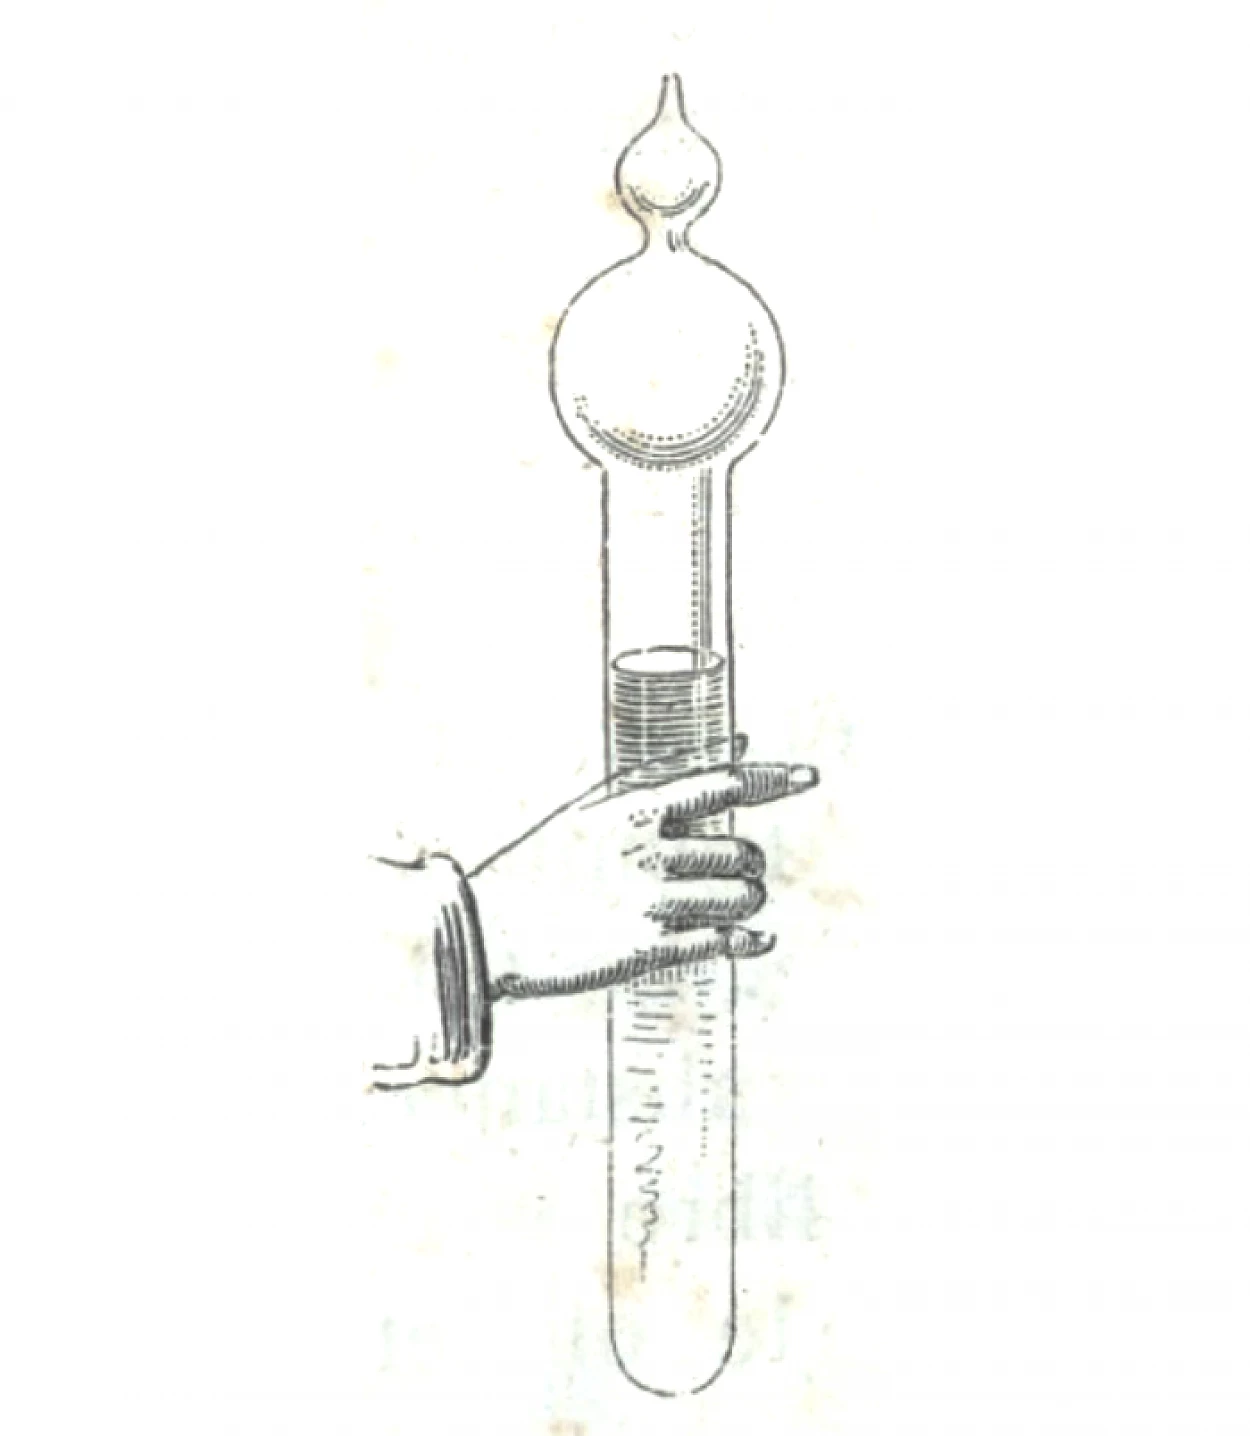 Fig. 2 - Jules Jamin, Cours de Physique de L’École Polytechnique, p. 46.